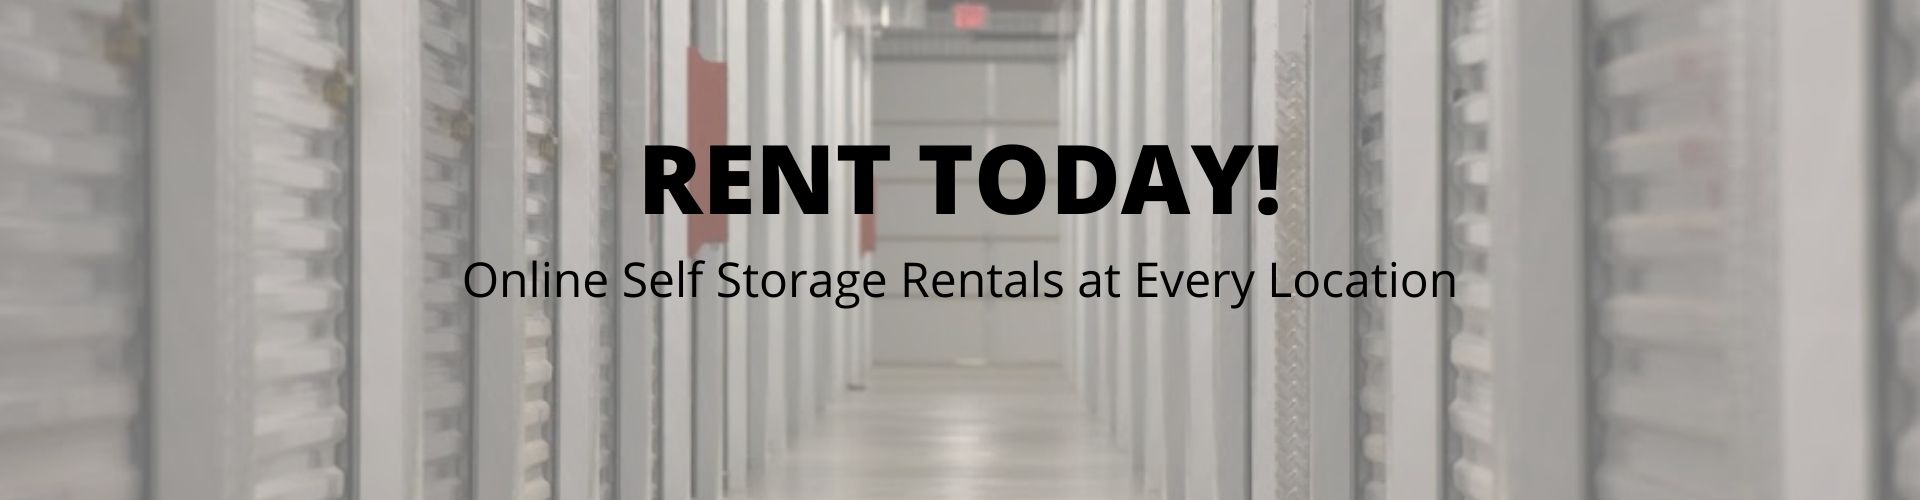 online storage rentals at Printworks Mill Storage